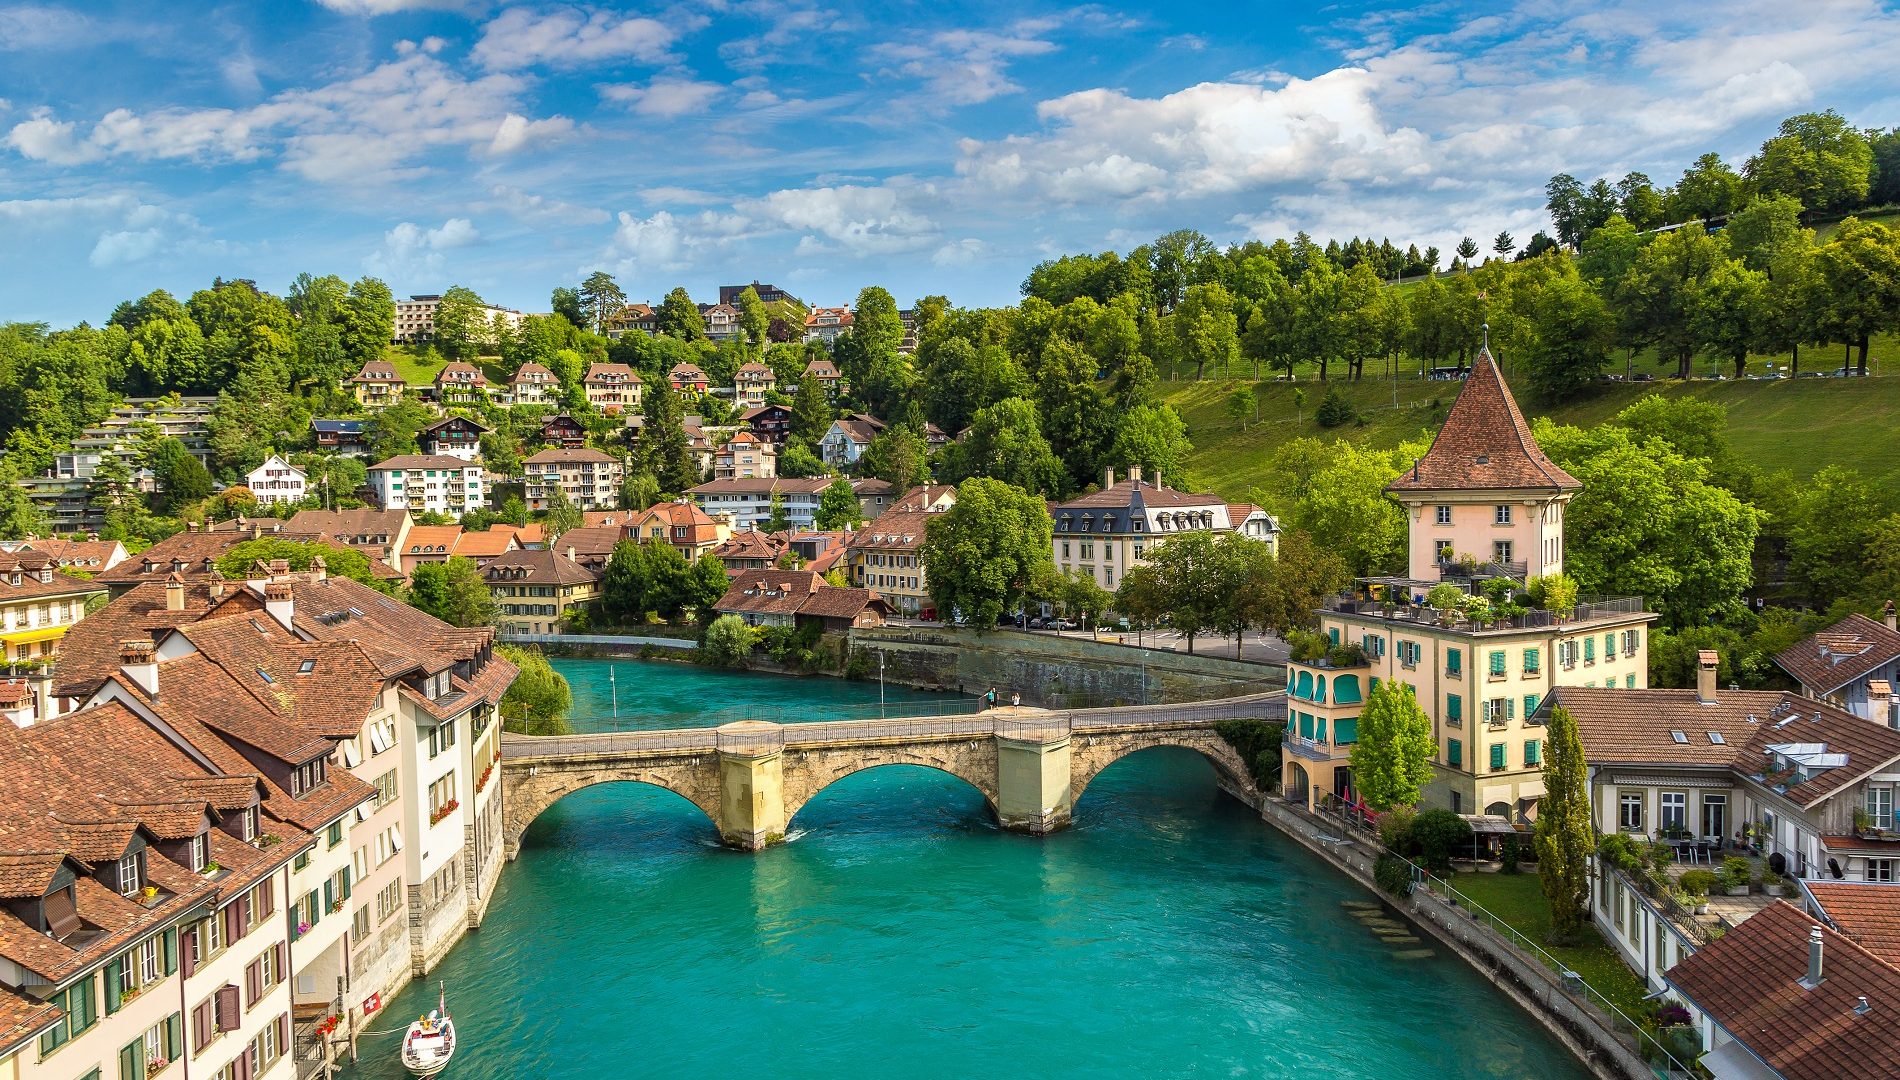 Le professioni più richieste nella vicina Svizzera